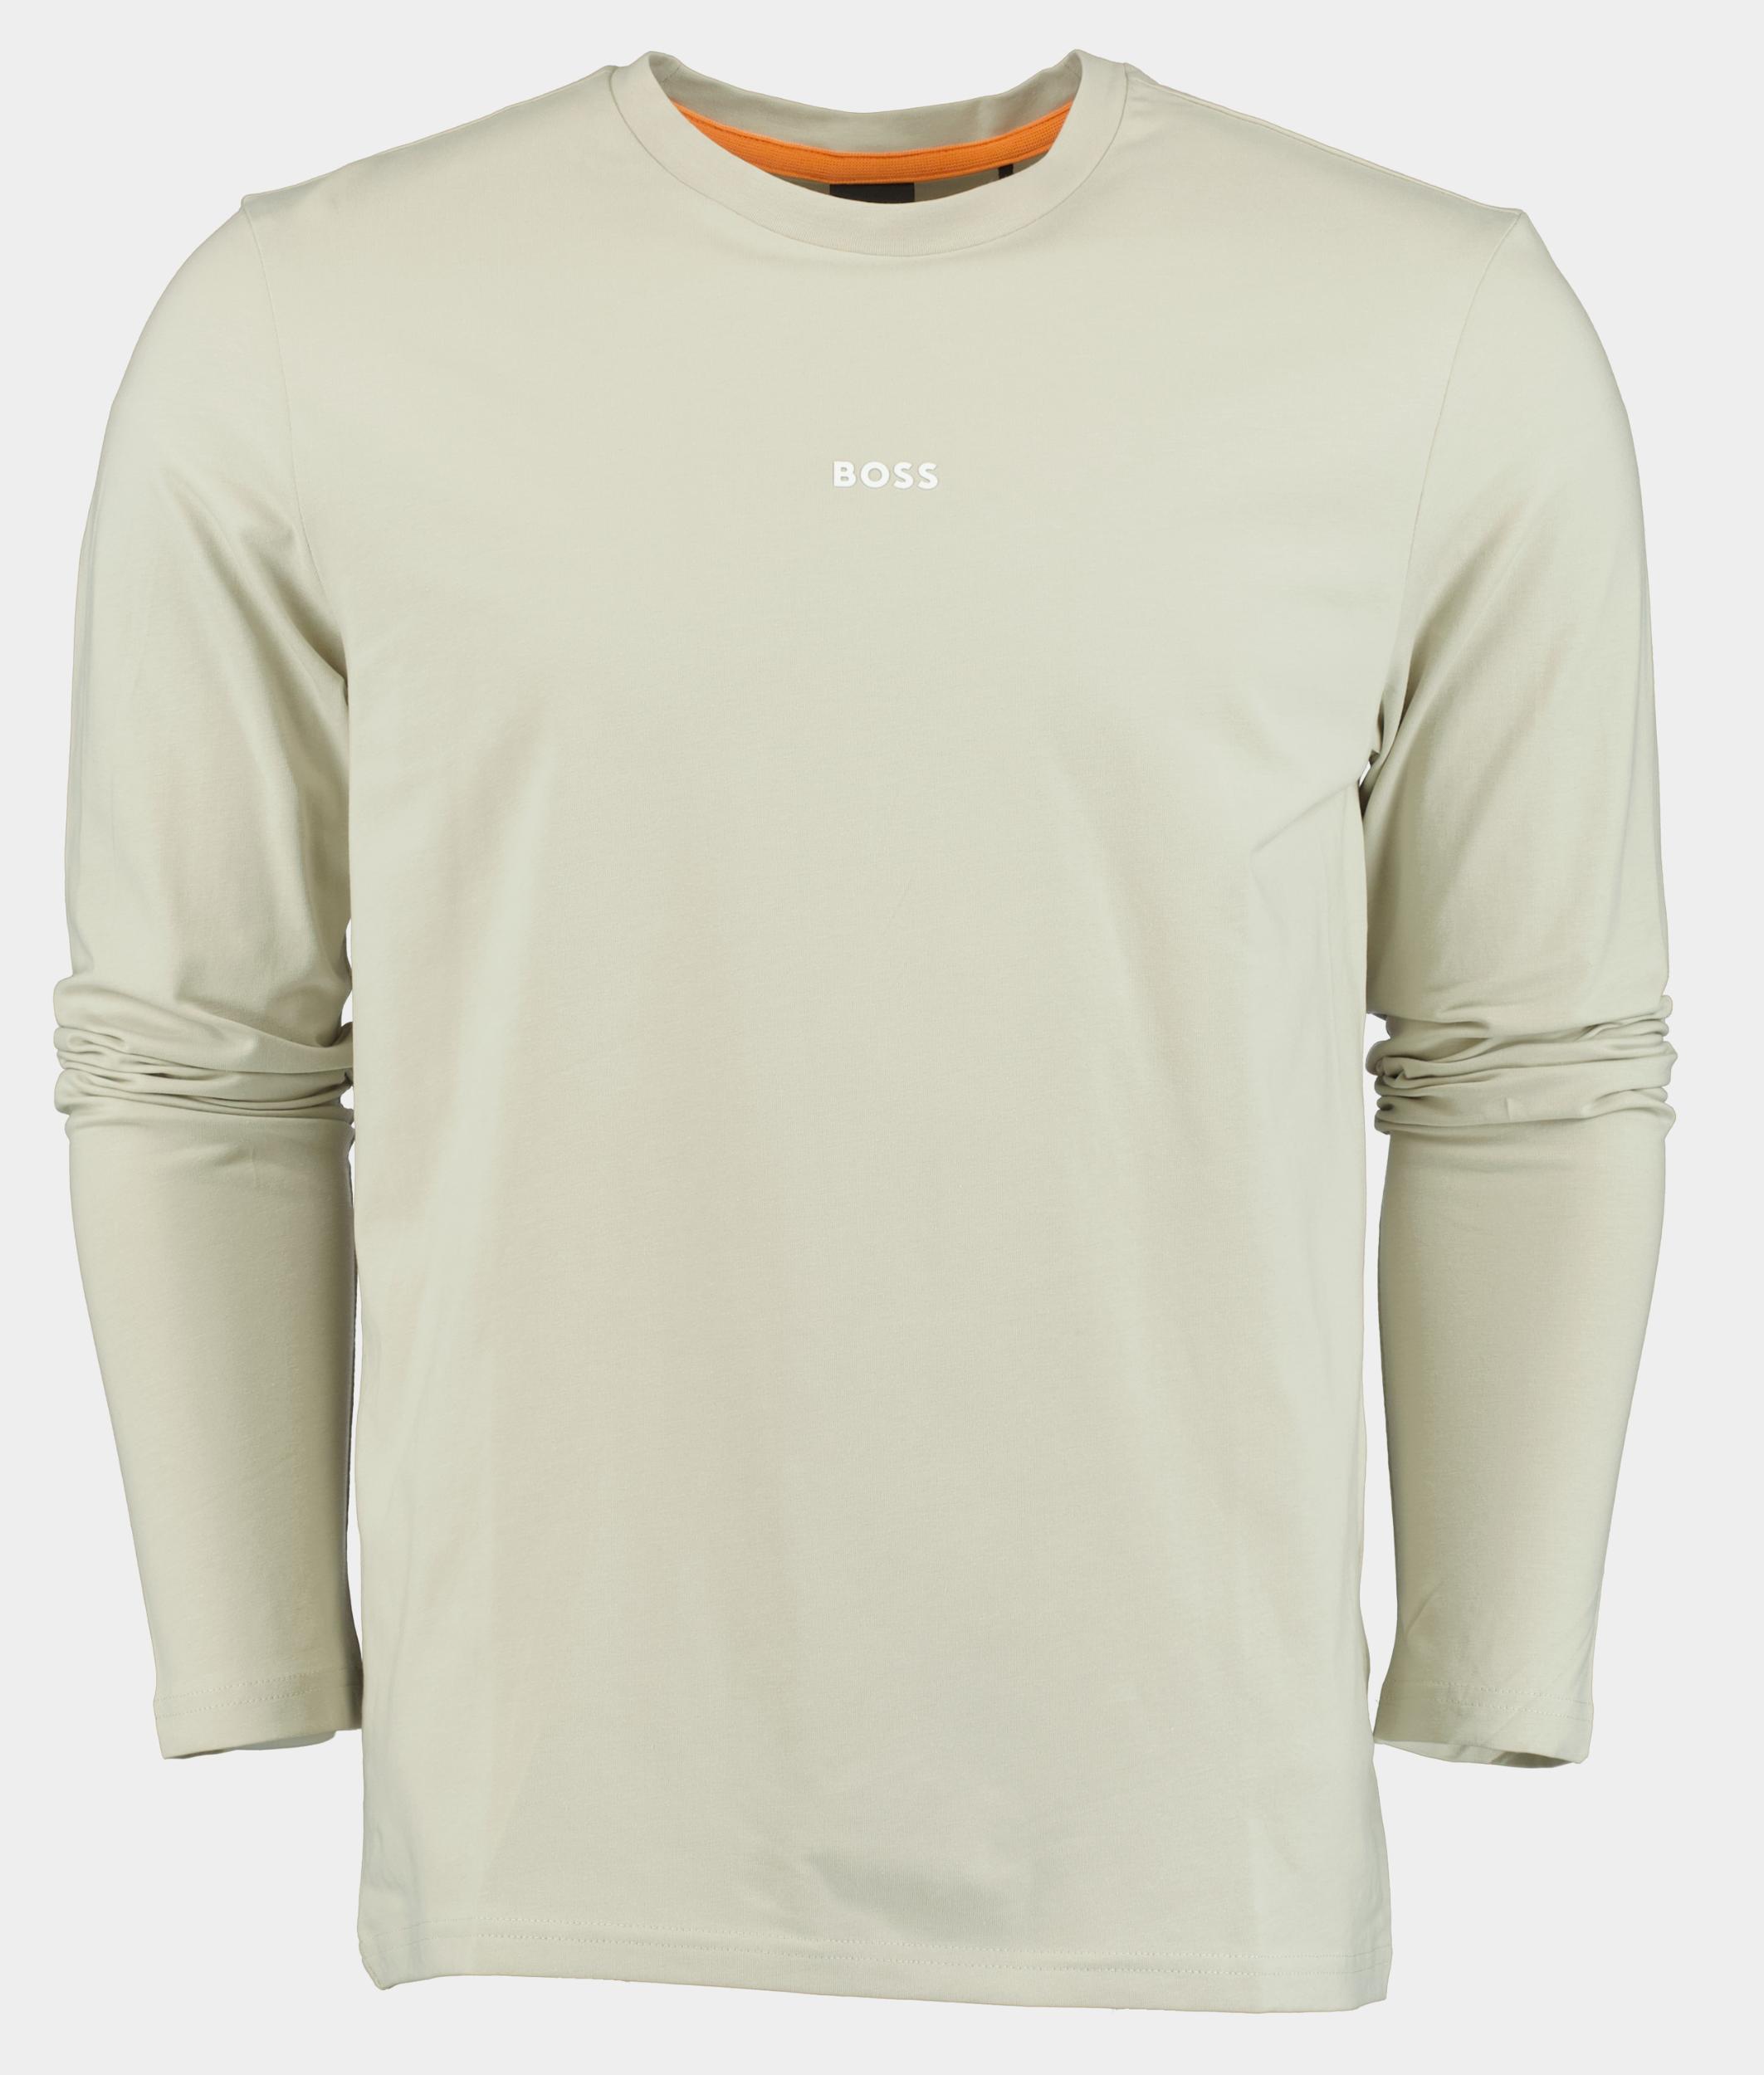 BOSS Orange T-shirt lange mouw Beige TChark 10242929 01 50473286/271